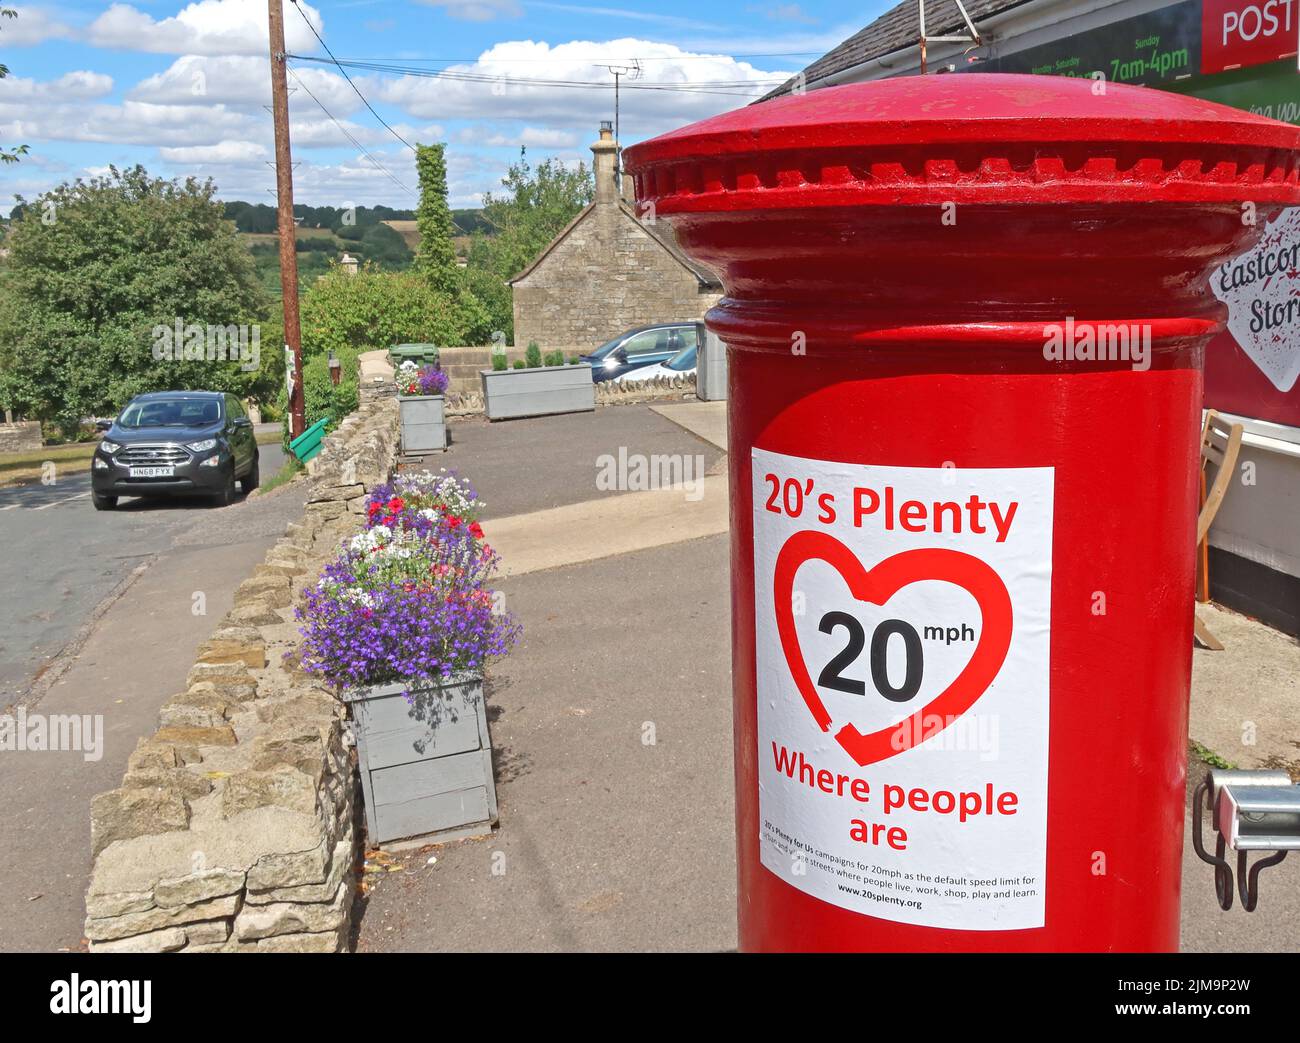 20s beaucoup, où les gens sont, ralentir, signe, sur la boîte postale, Eastcombe village, Stroud, Gloucestershire, Angleterre, Royaume-Uni, GL6 7EB Banque D'Images